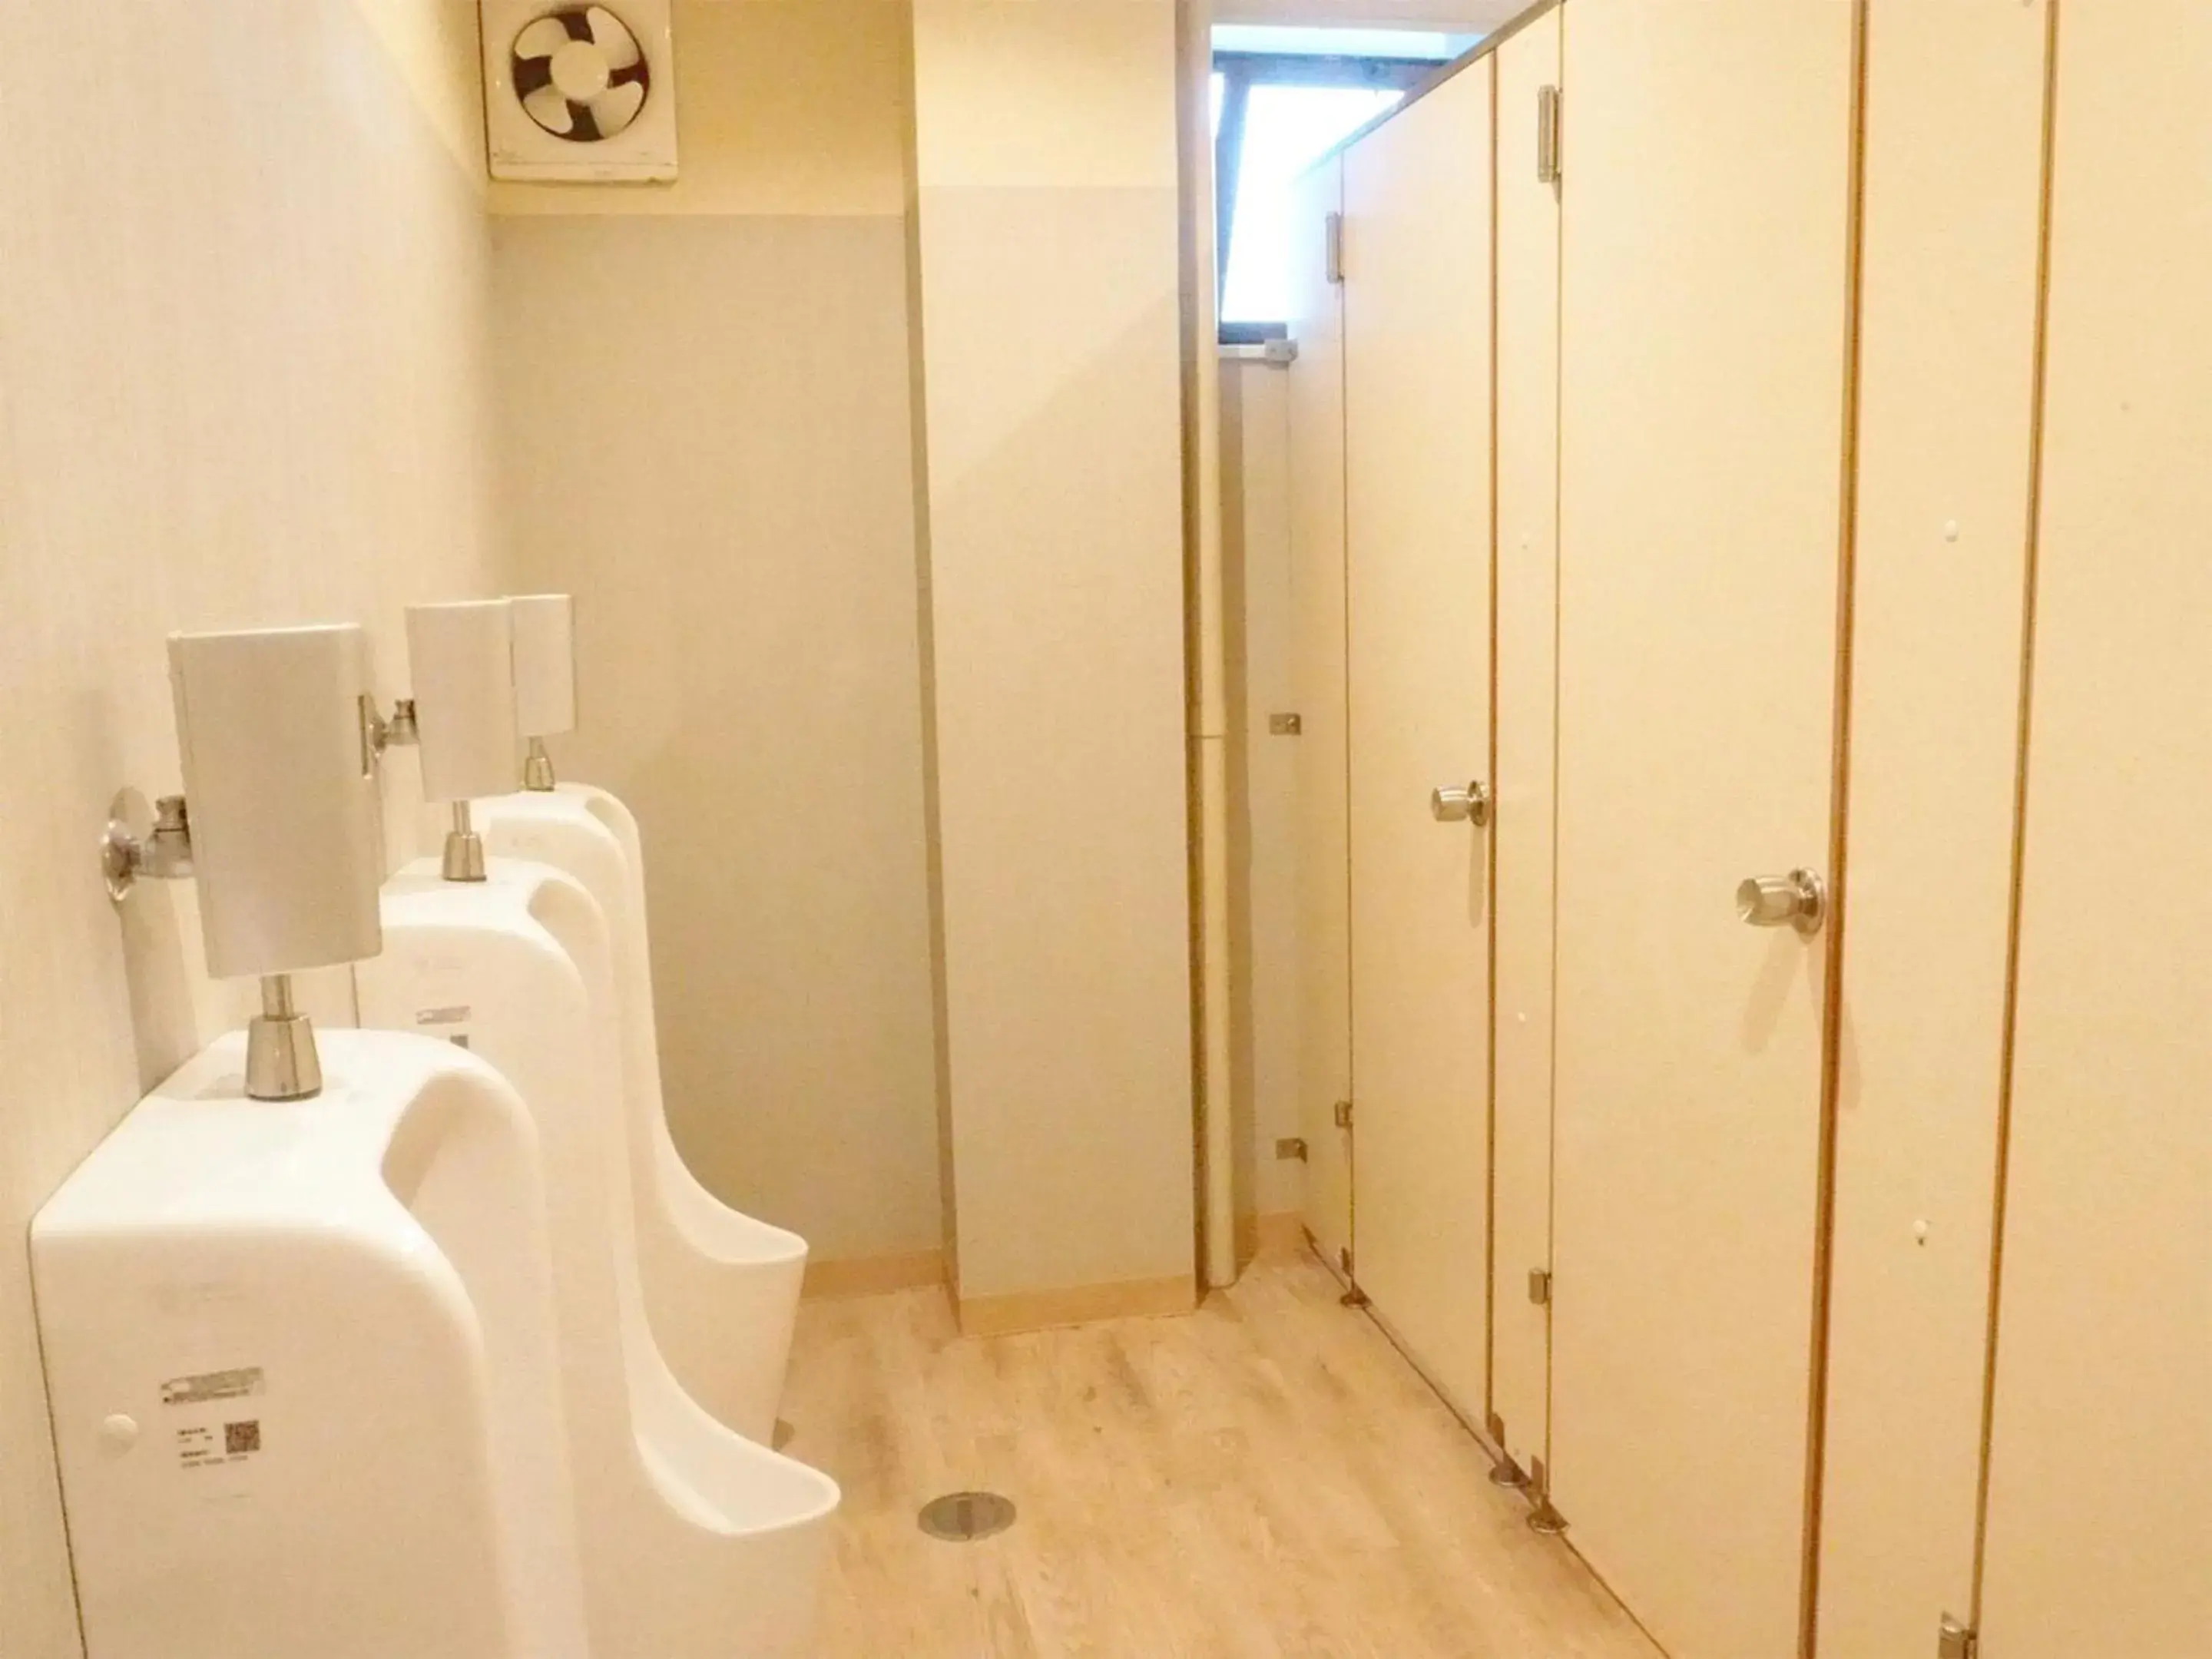 Toilet, Bathroom in Oyado Hachibei